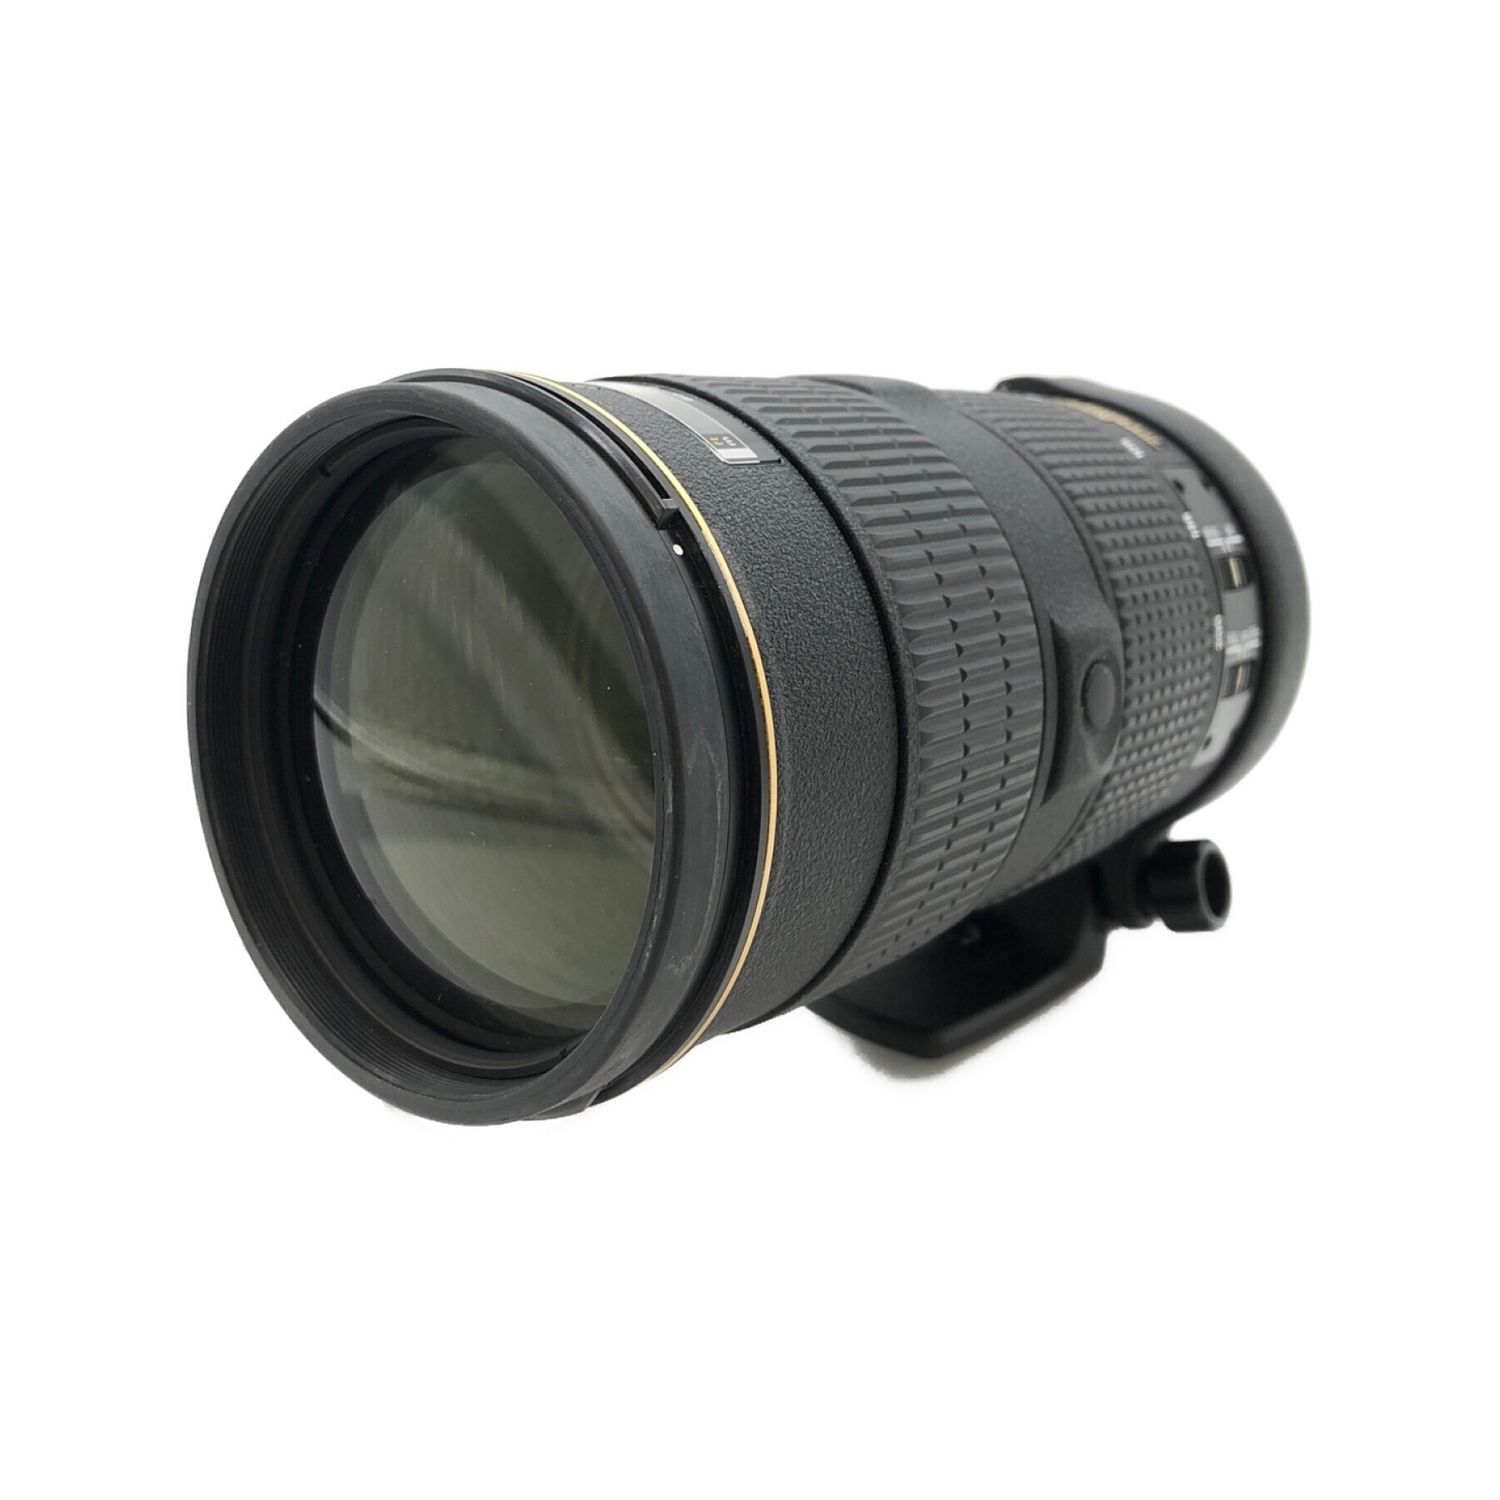 Nikon (ニコン) 大口径望遠ズームレンズ AF-S Zoom Nikkor ED 80